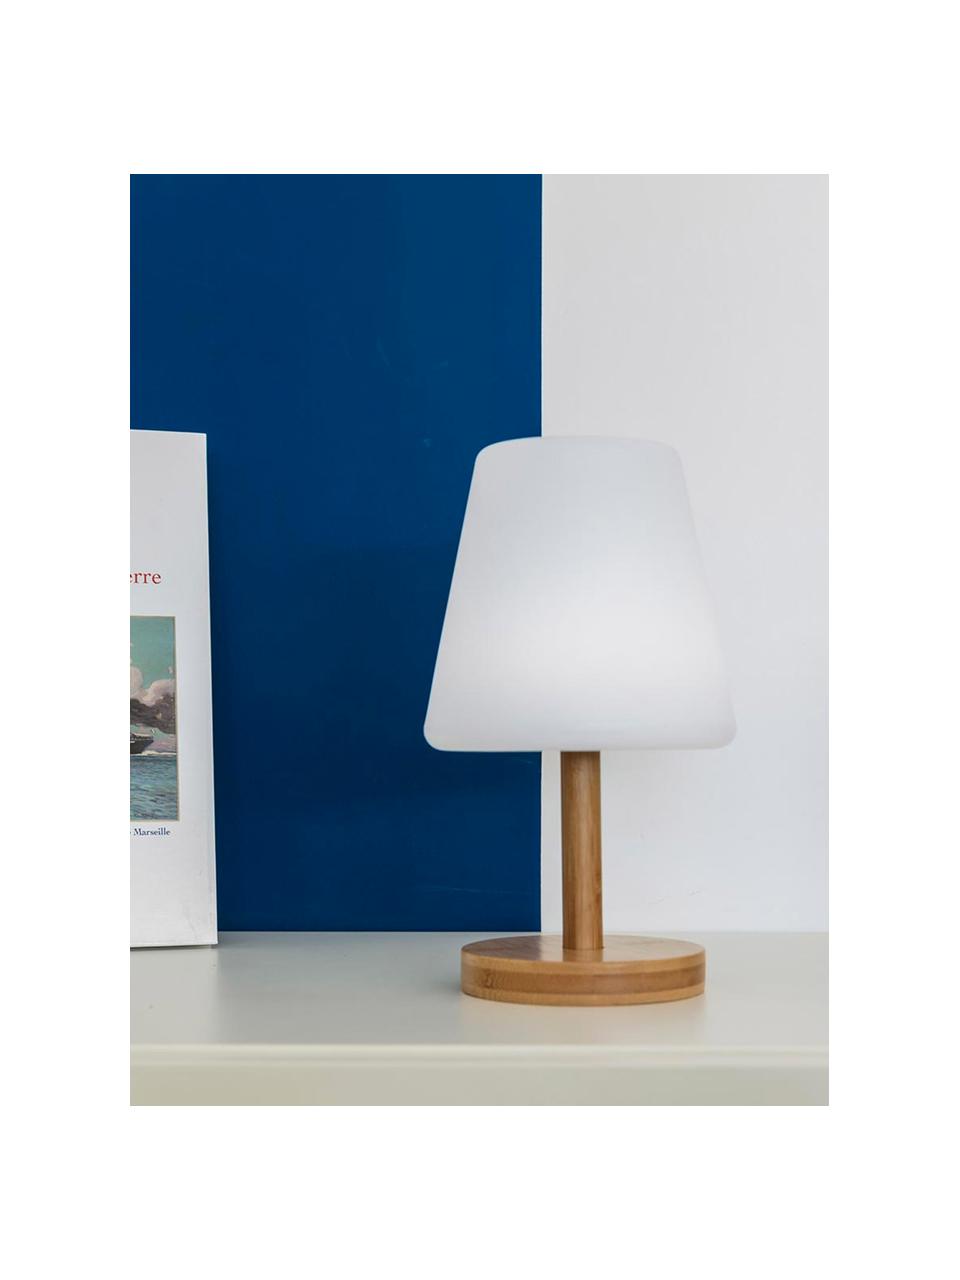 Mobile Dimmbare Außentischlampe Standy mit Bambusfuß, Lampenschirm: Polyethylen, Lampenfuß: Bambus, Weiß, Helles Holz, Ø 16 x H 25 cm